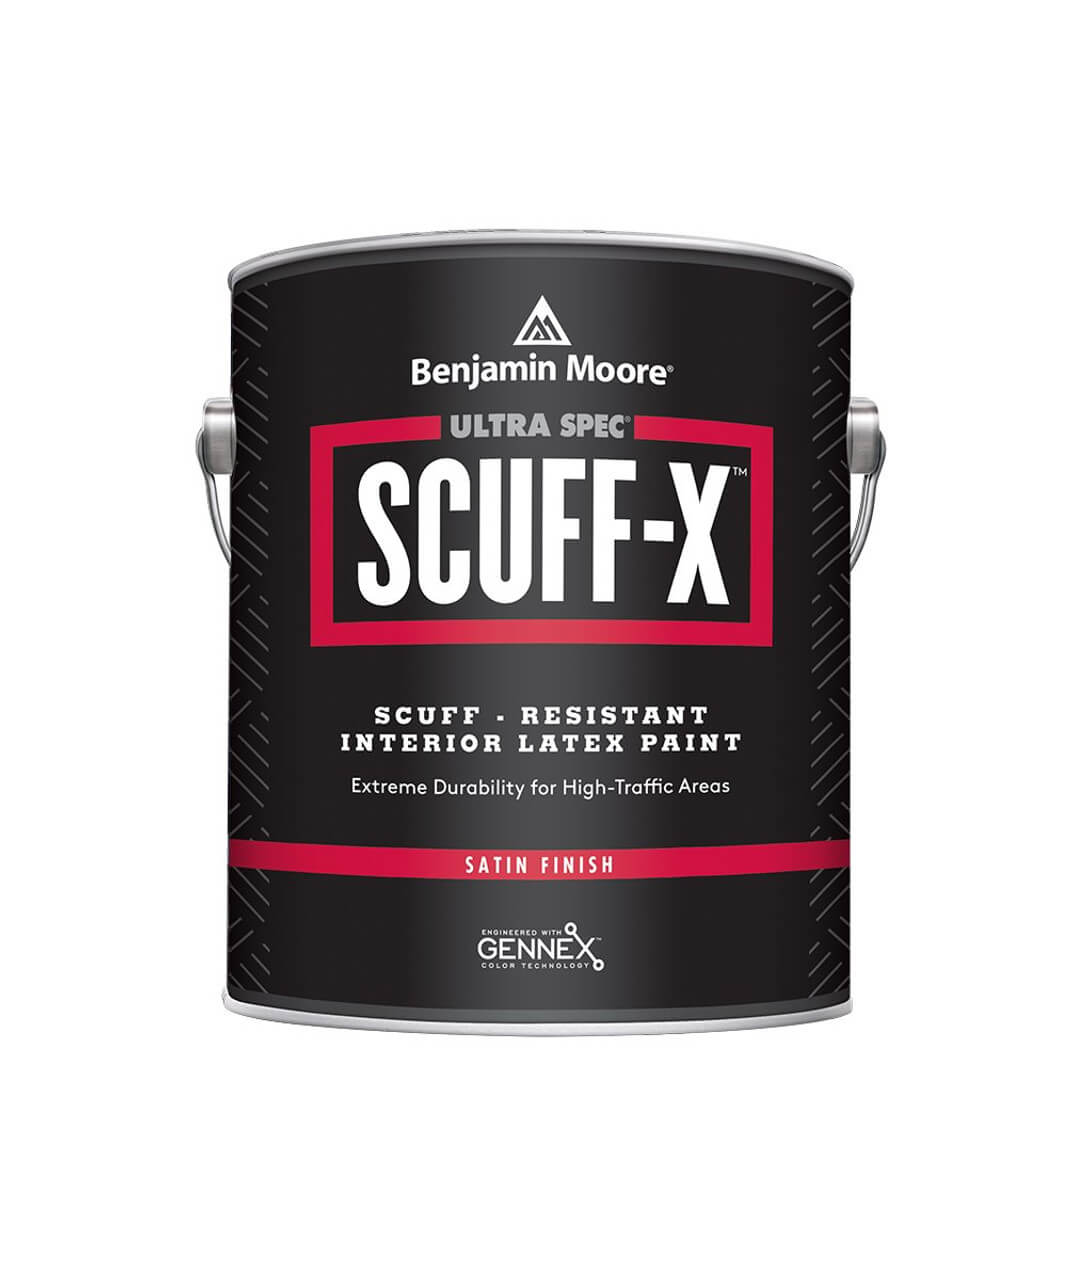 Scuff-X Satin Finish 0486 (28-48% блеска), базы 1-4